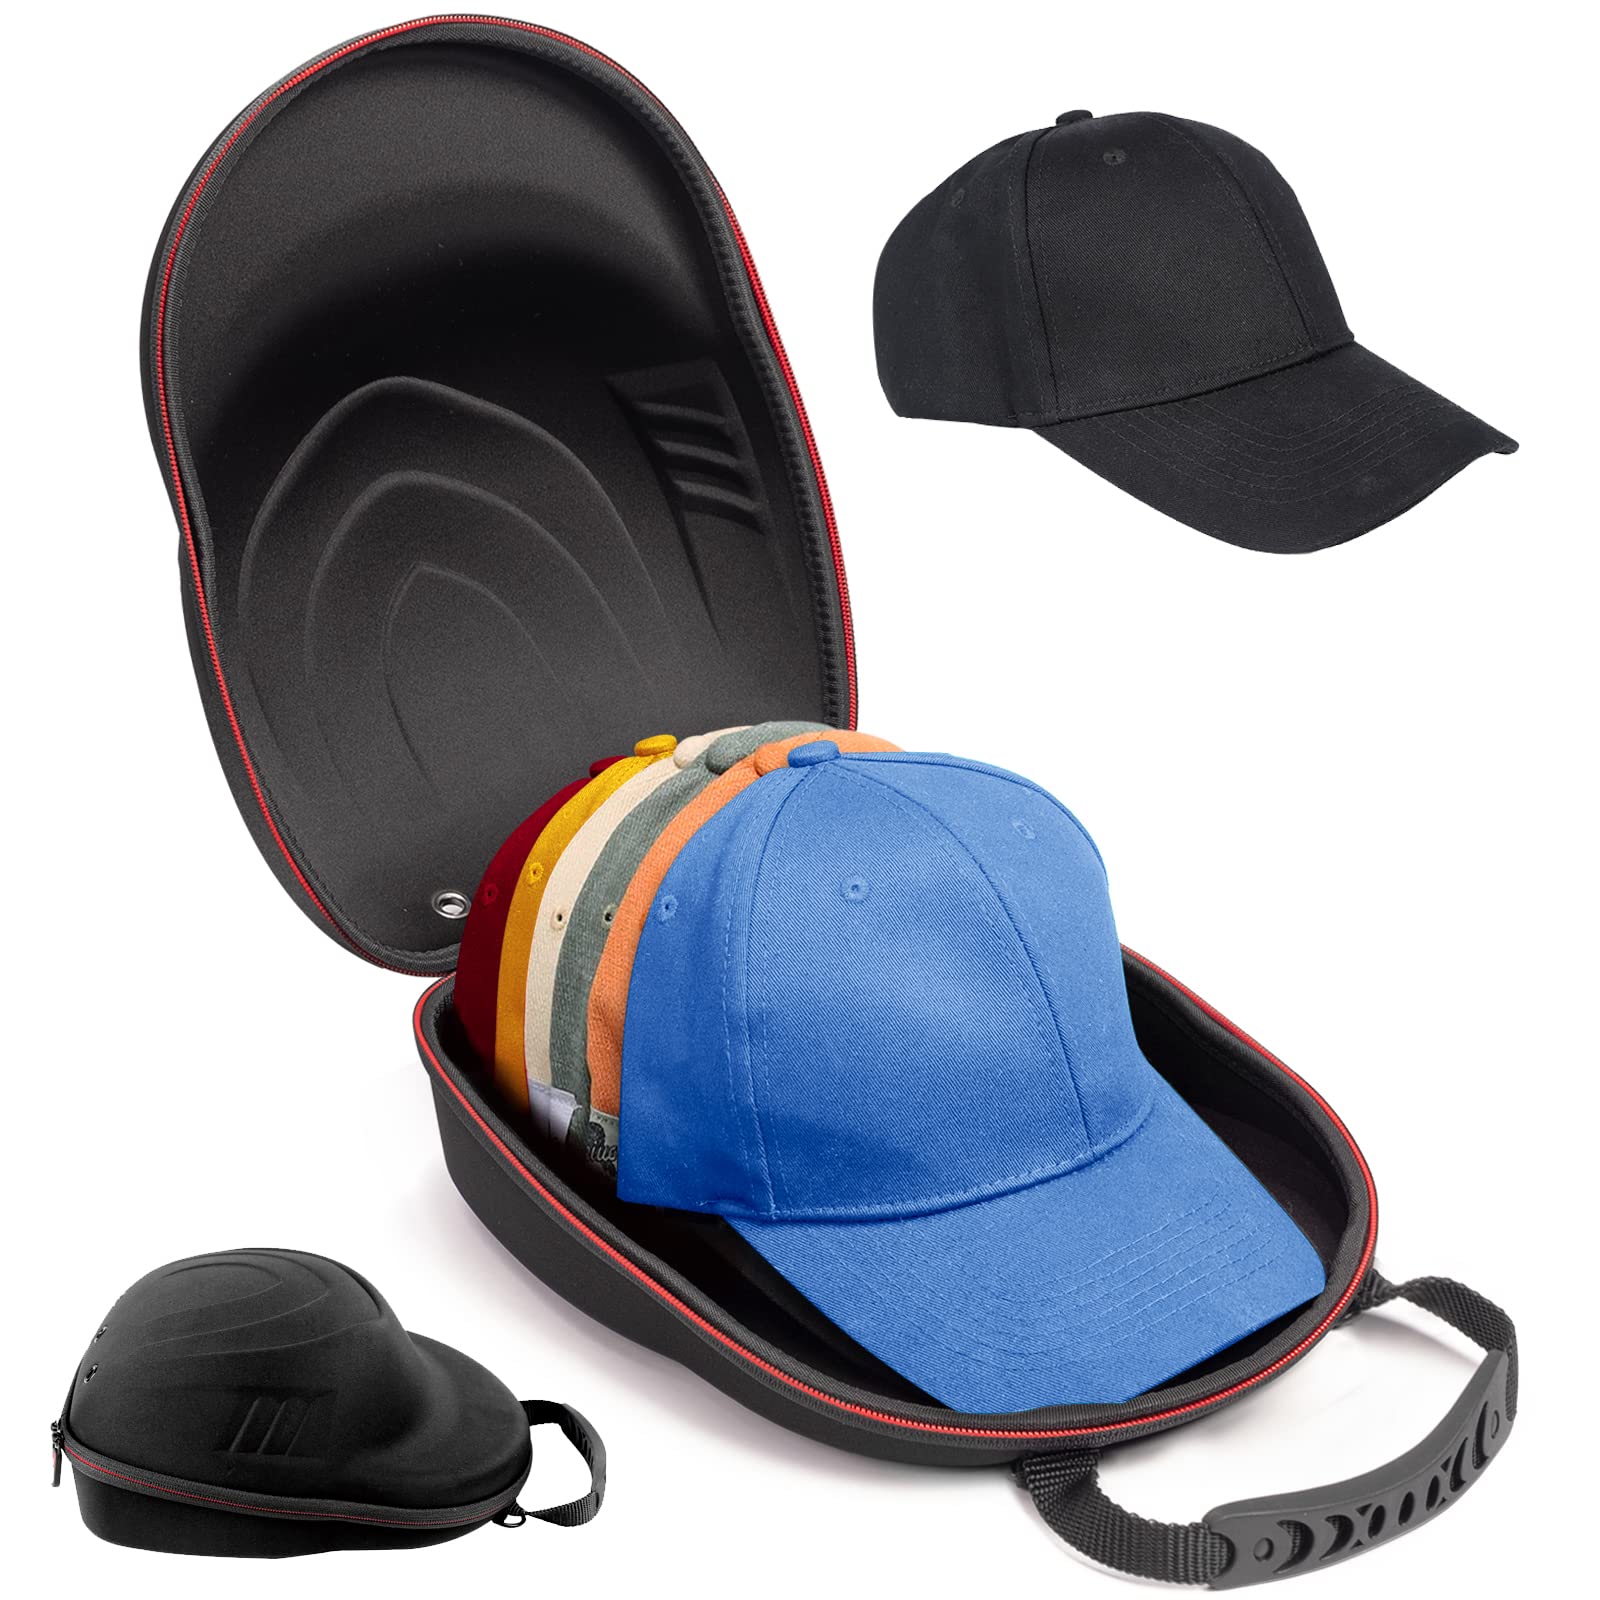 Glamgen Hard Hat Case for Baseball Caps,Hat Carrier Travel Case with One Black Baseball Cap and Adjustable Shoulder Strap,Hat Organizer Holder Bag for 6 Baseball Caps